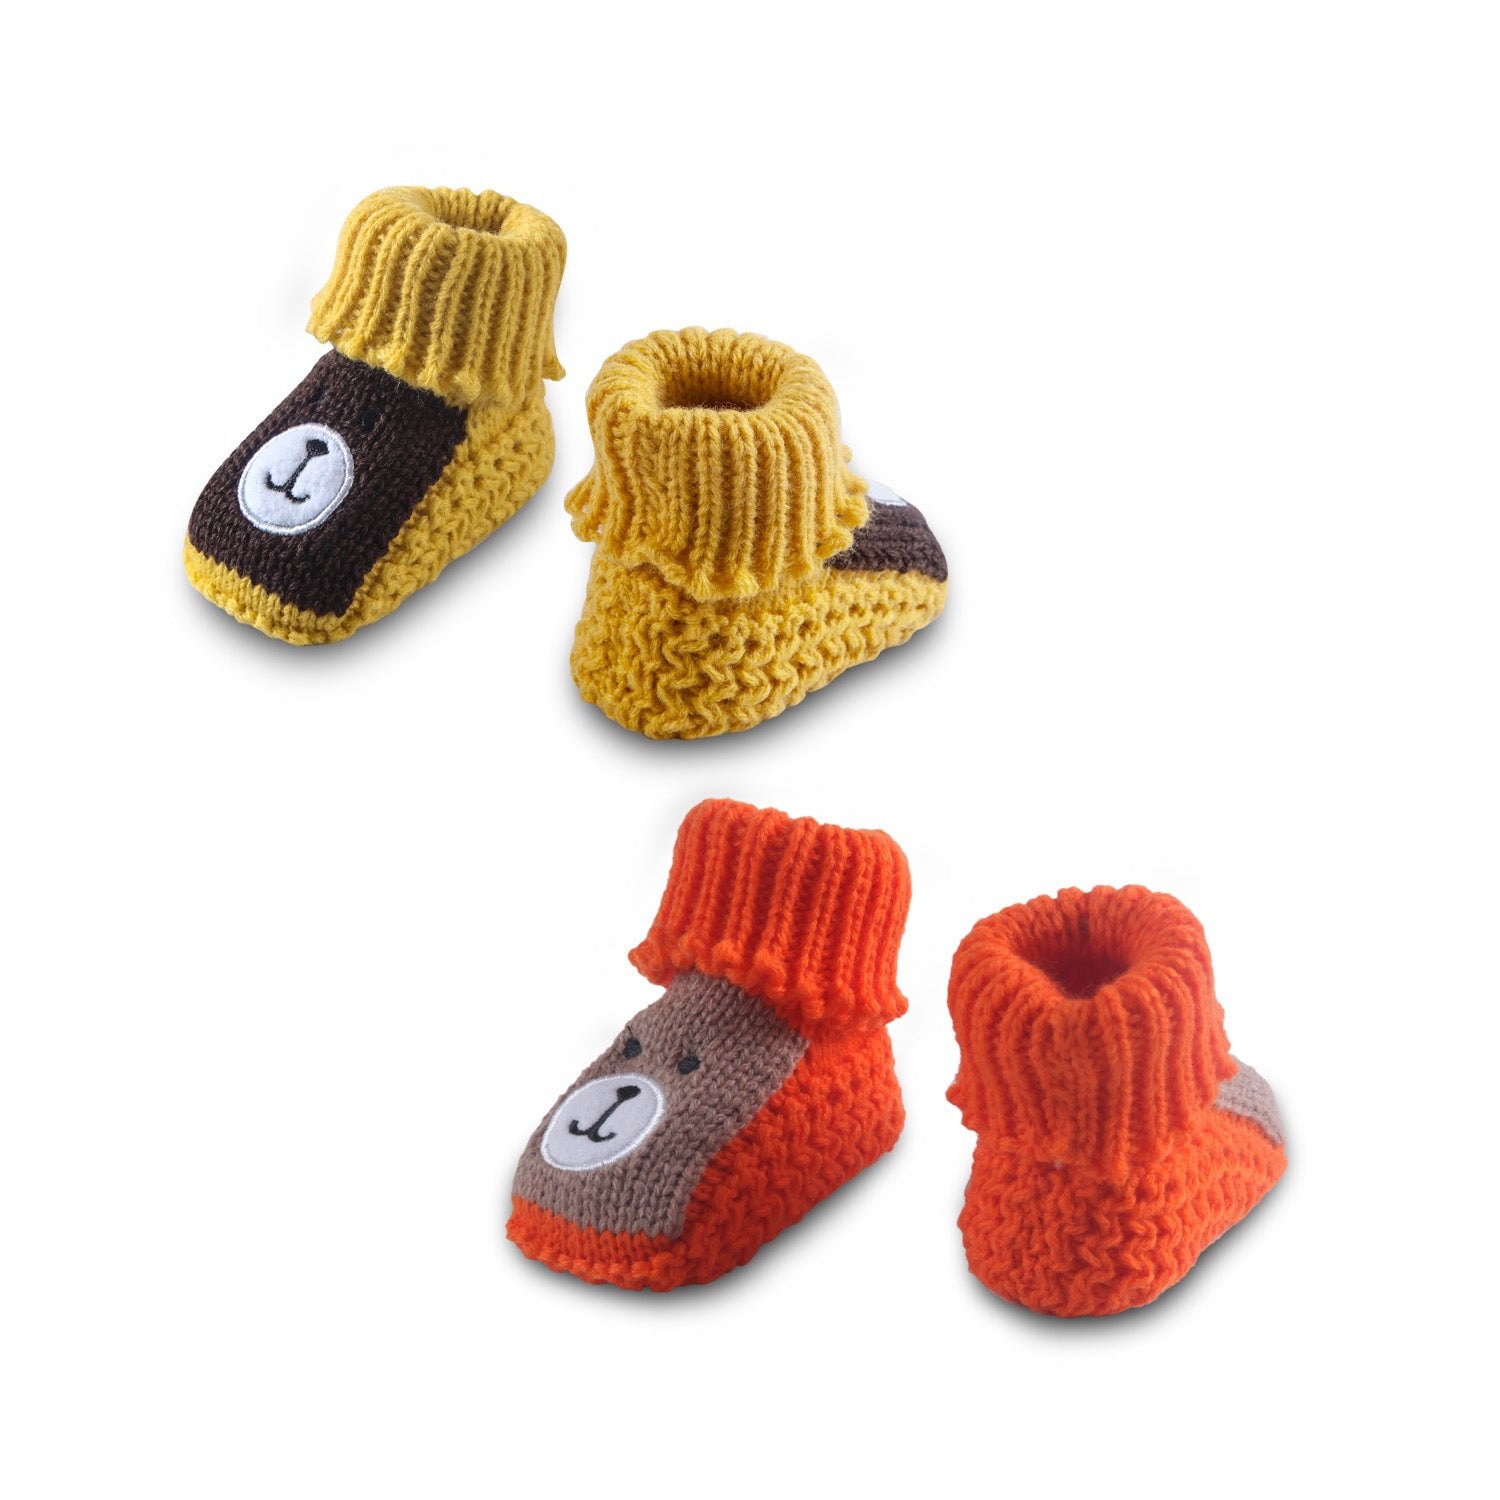 Newborn Crochet Woollen Booties Teddy - Orange, Yellow - Baby Moo